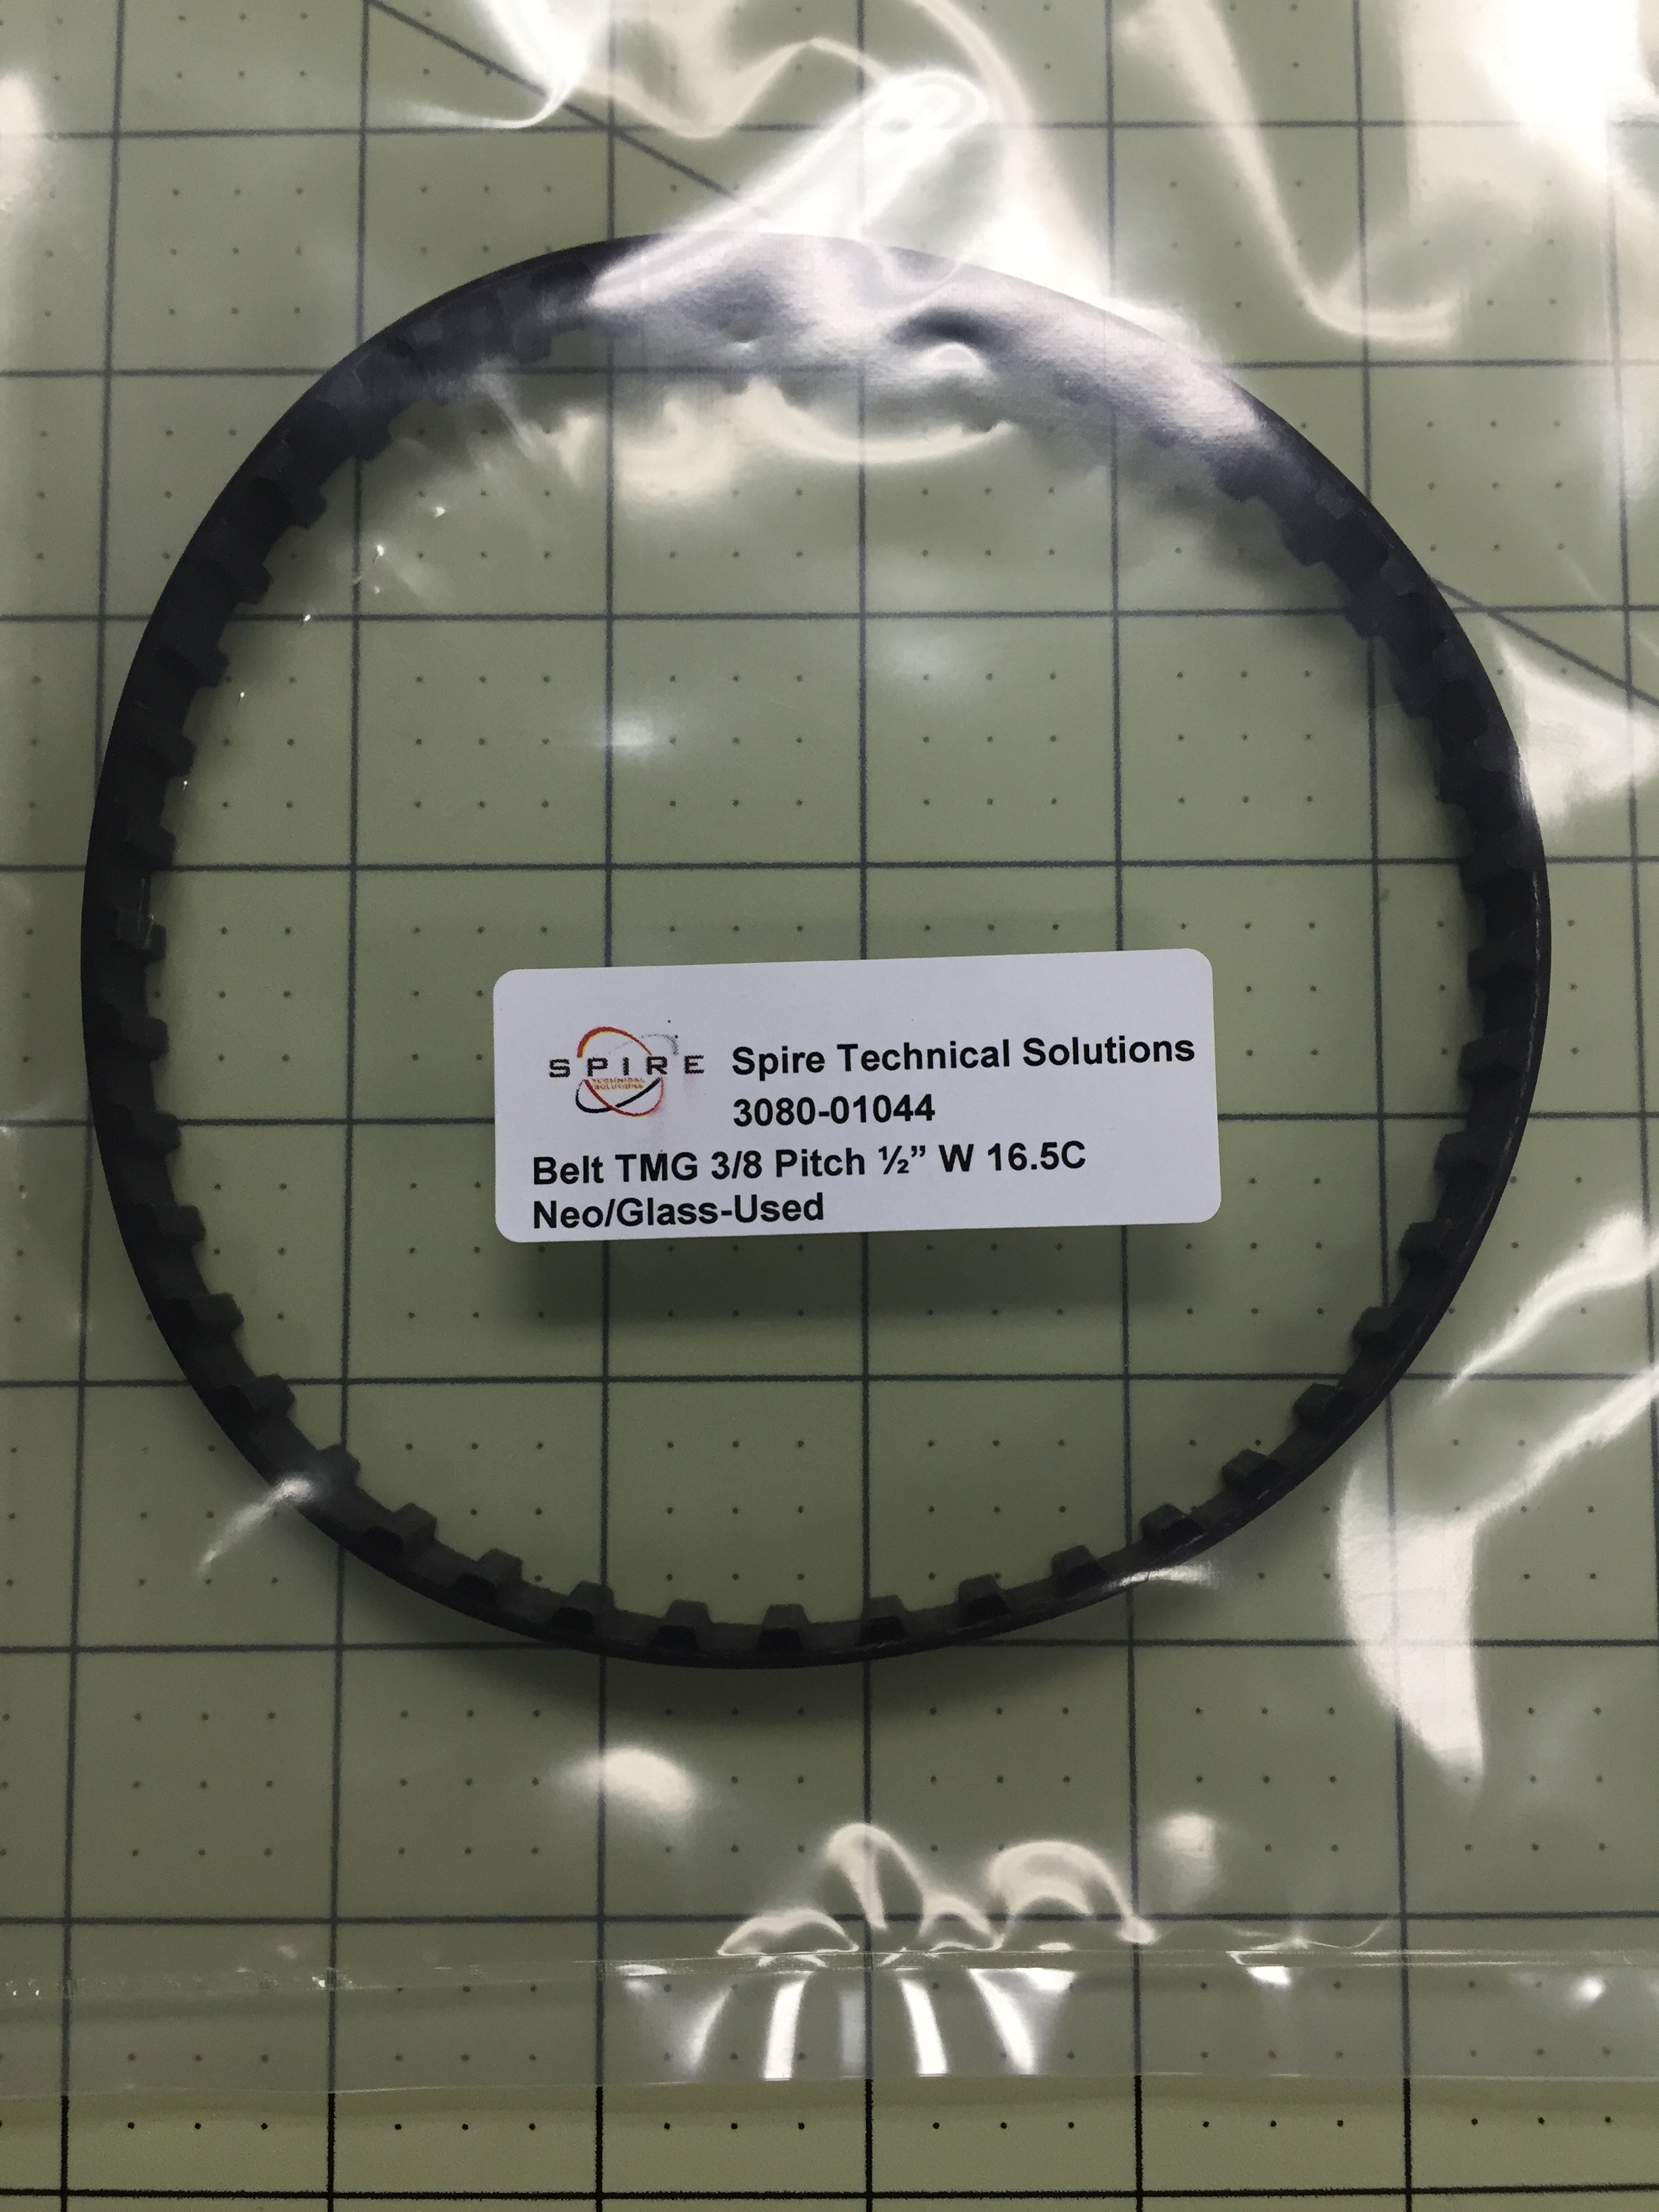 Belt TMG 3/8 Pitch ½” W 16.5C Neo/Glass